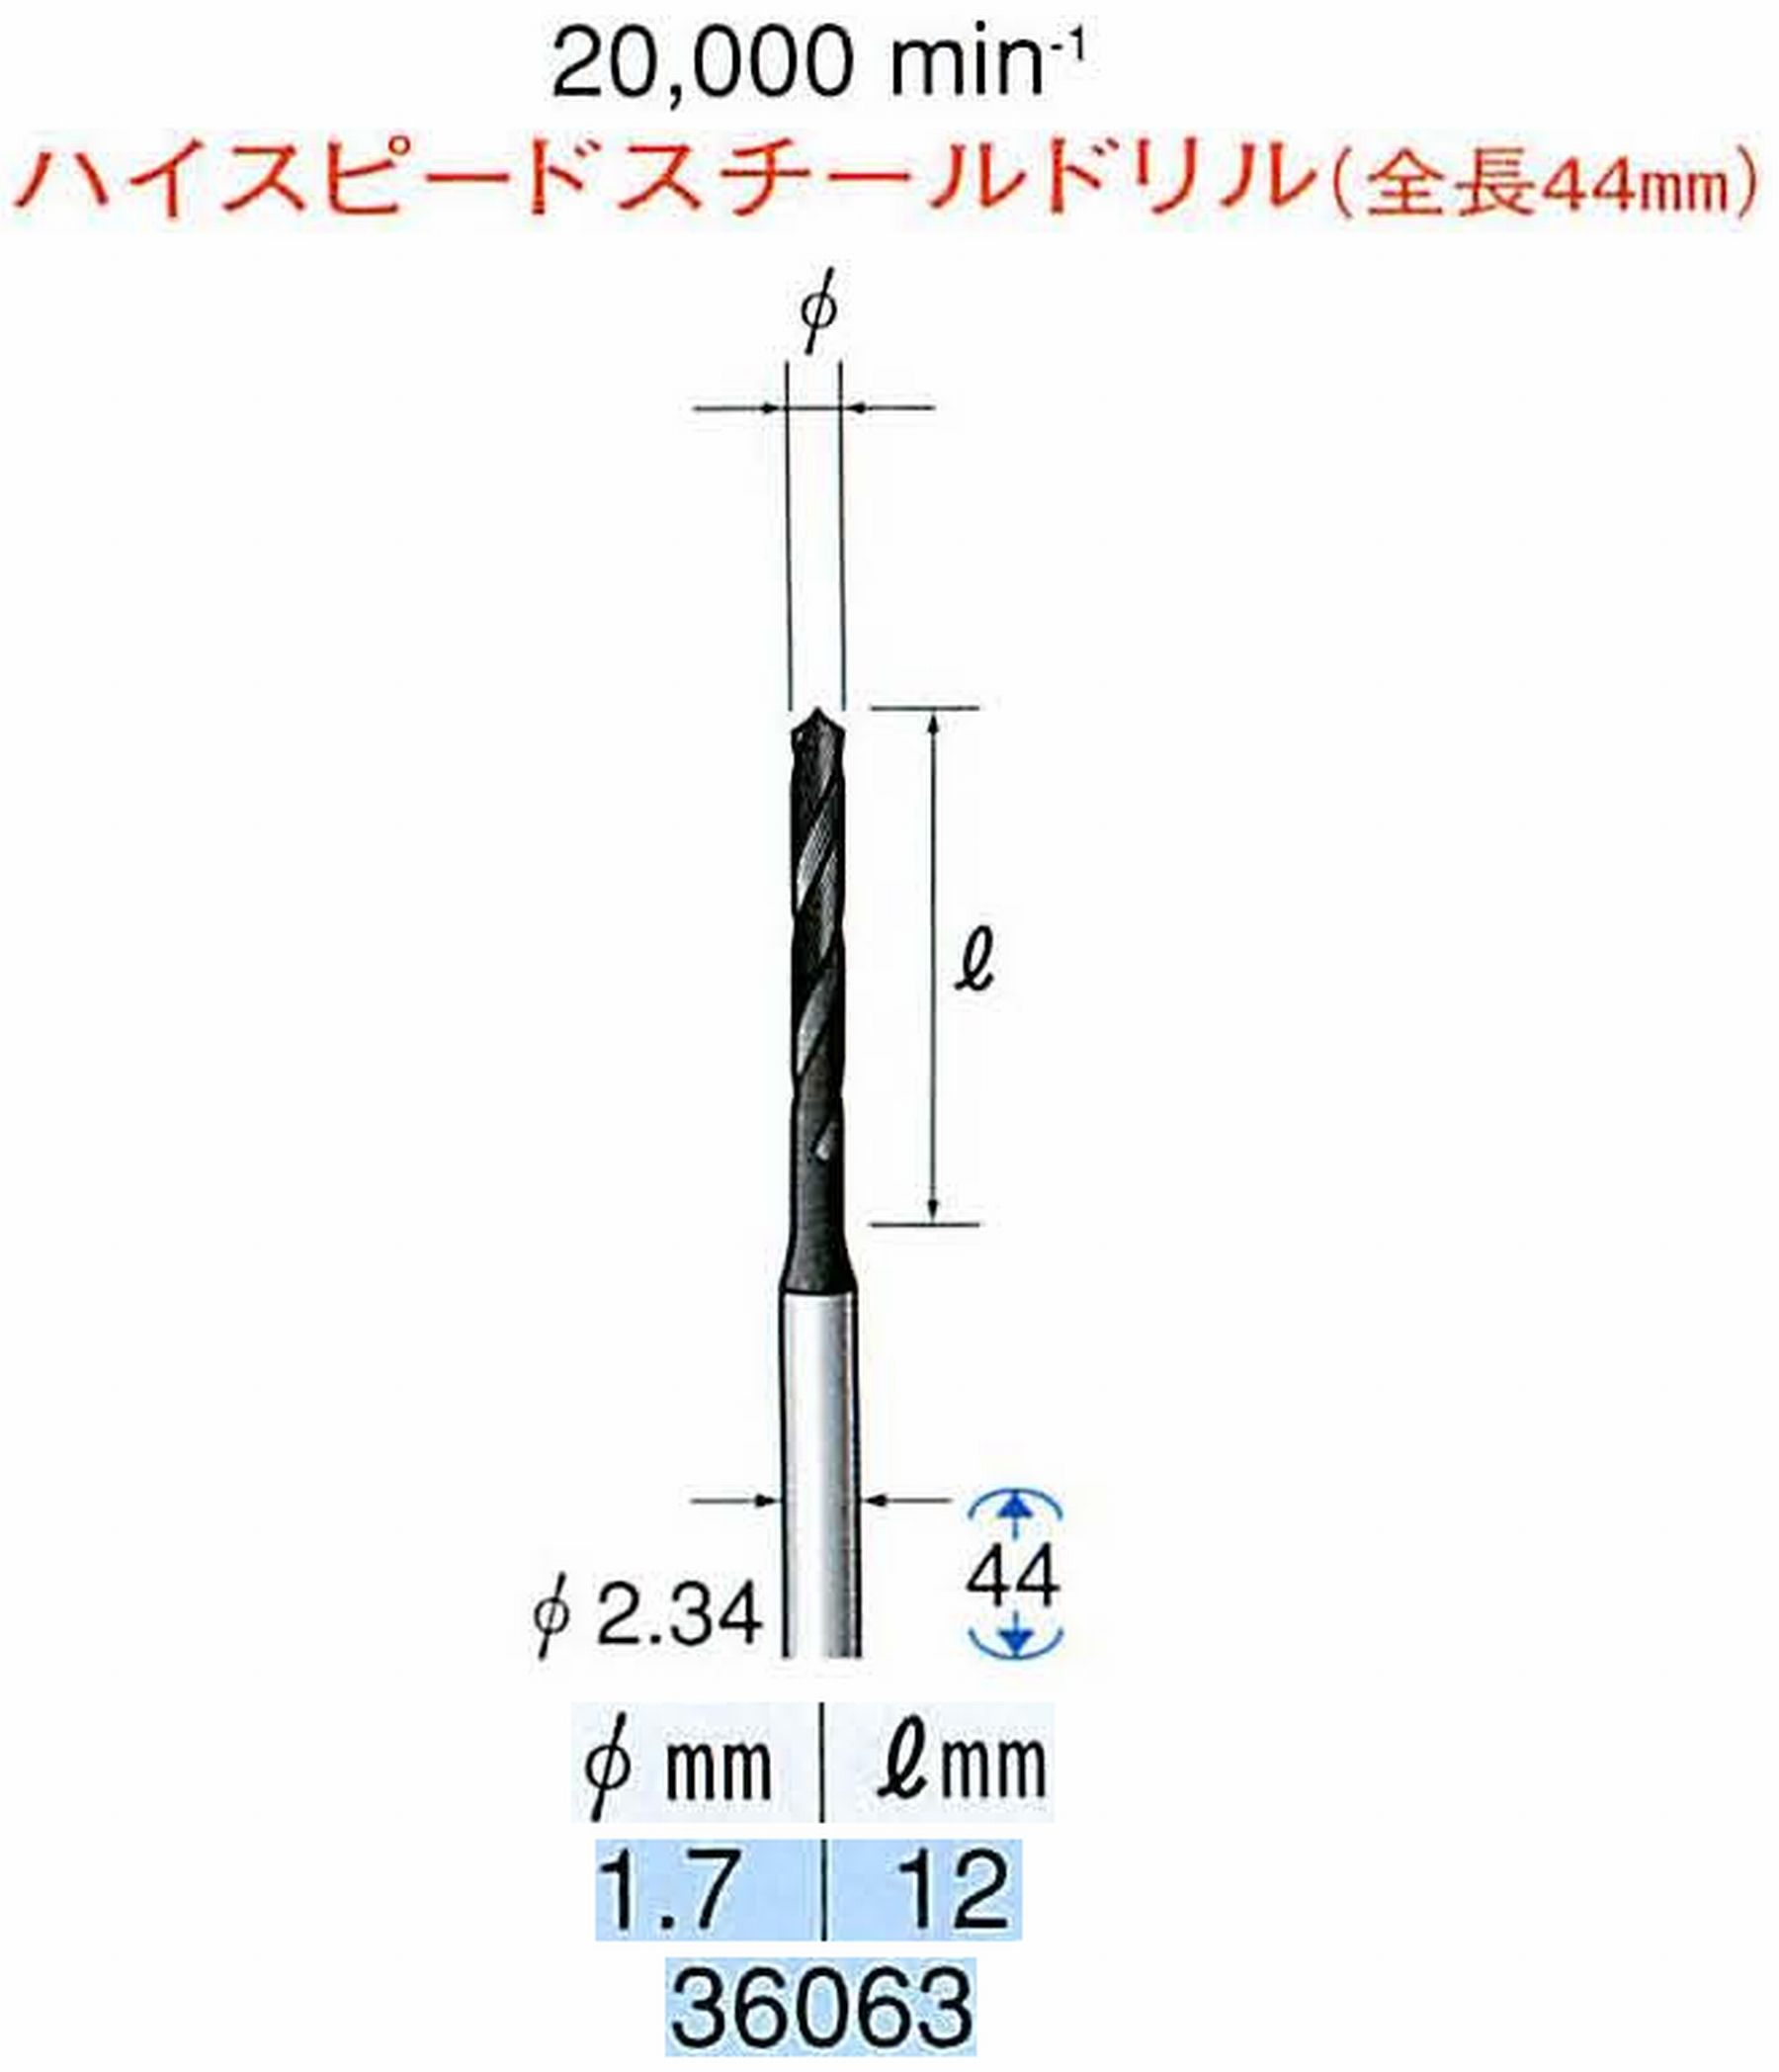 ナカニシ/NAKANISHI ツイストドリル ハイスピードスチール(H.S.S)ドリル(全長44mm) 軸径(シャンク) φ2.34mm 36063